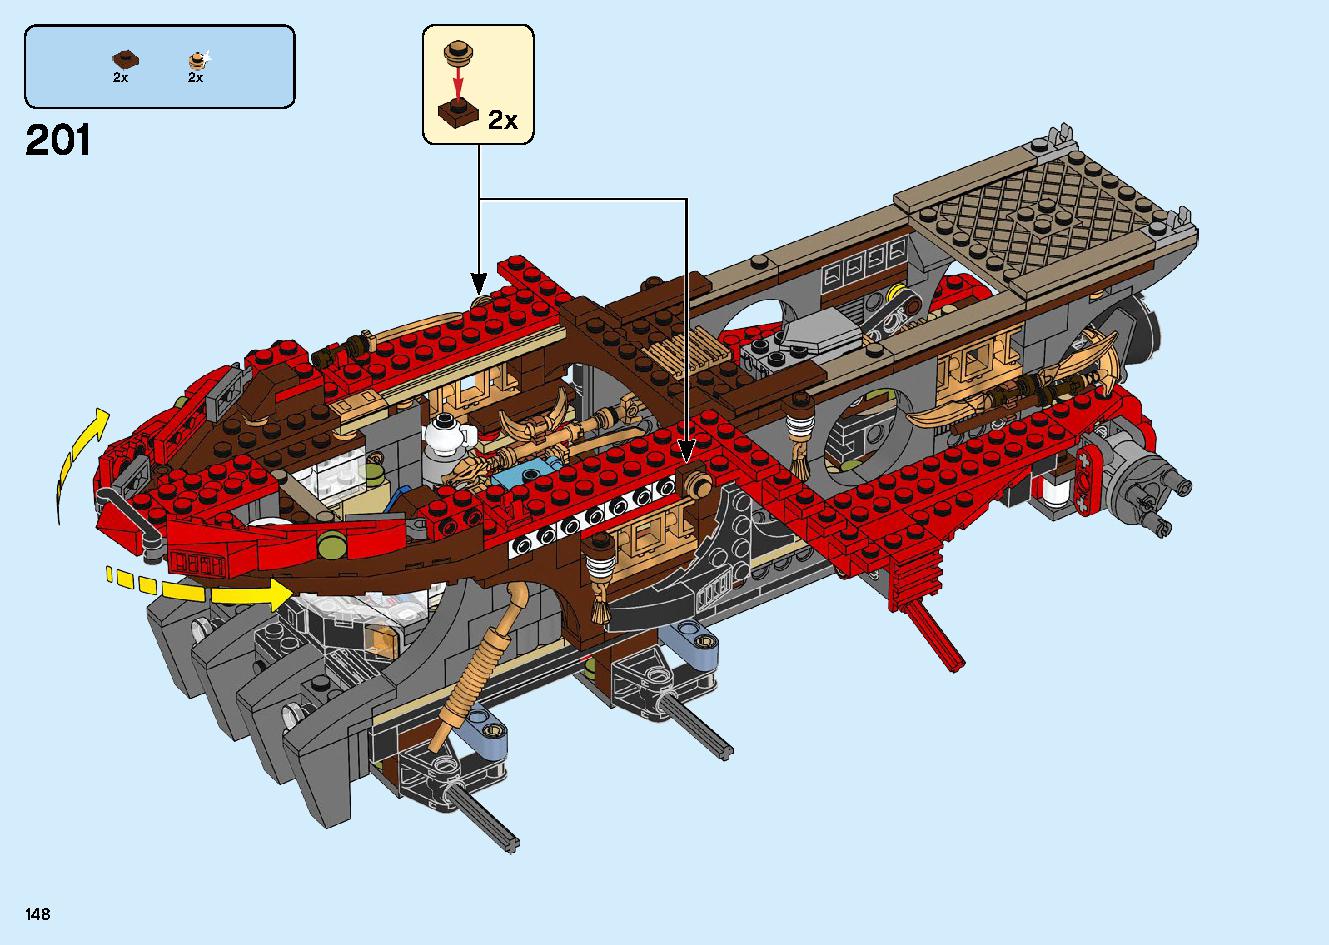 陸上戦艦バウンティ号 70677 レゴの商品情報 レゴの説明書・組立方法 148 page